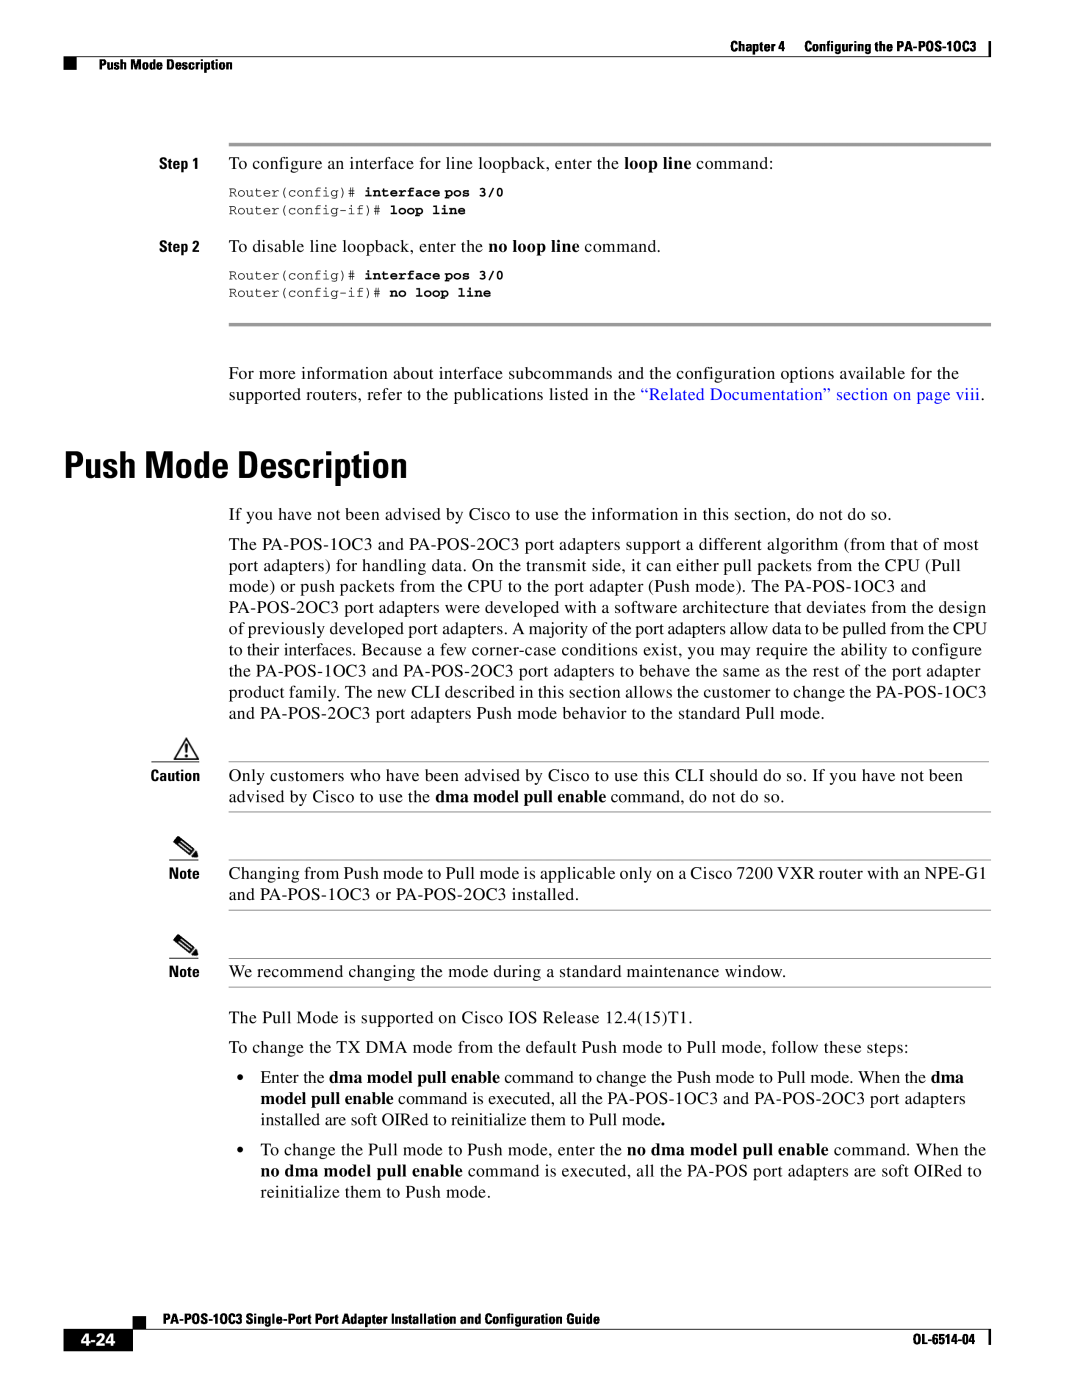 Cisco Systems PA-POS-2OC3, PA-POS-1OC3 manual Push Mode Description, 4-24 